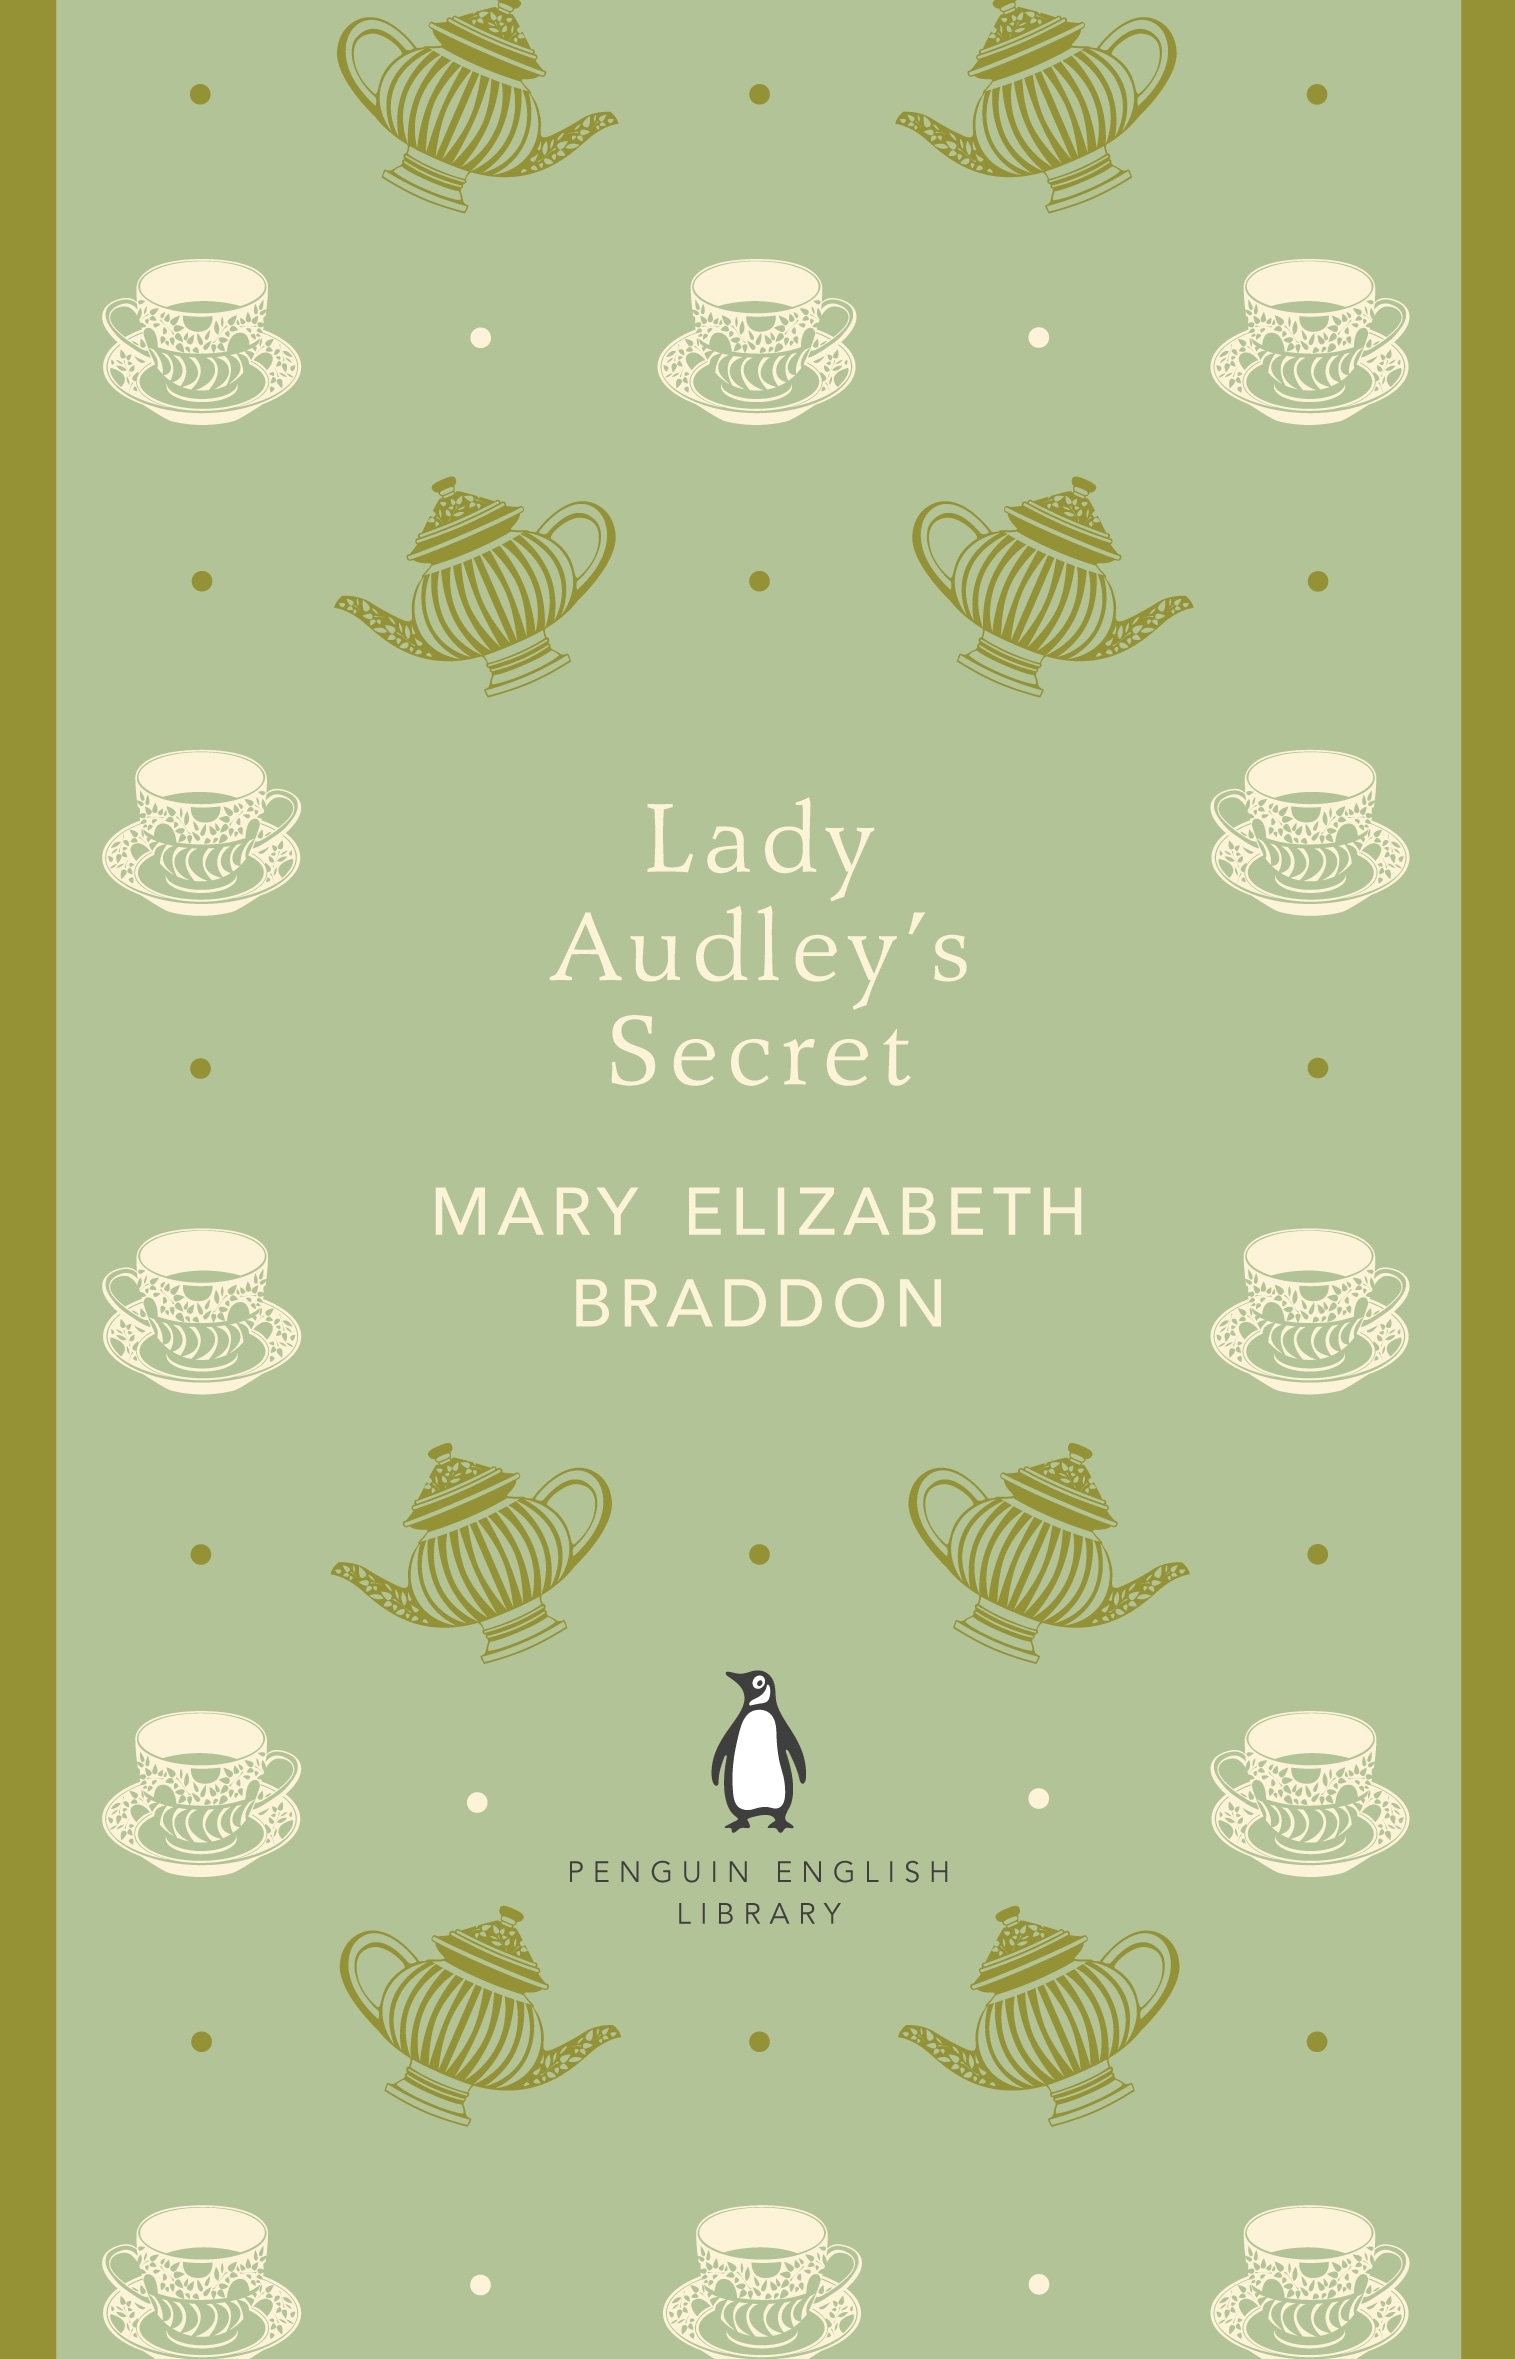 Book “Lady Audley's Secret” by Mary Elizabeth Braddon — April 26, 2012